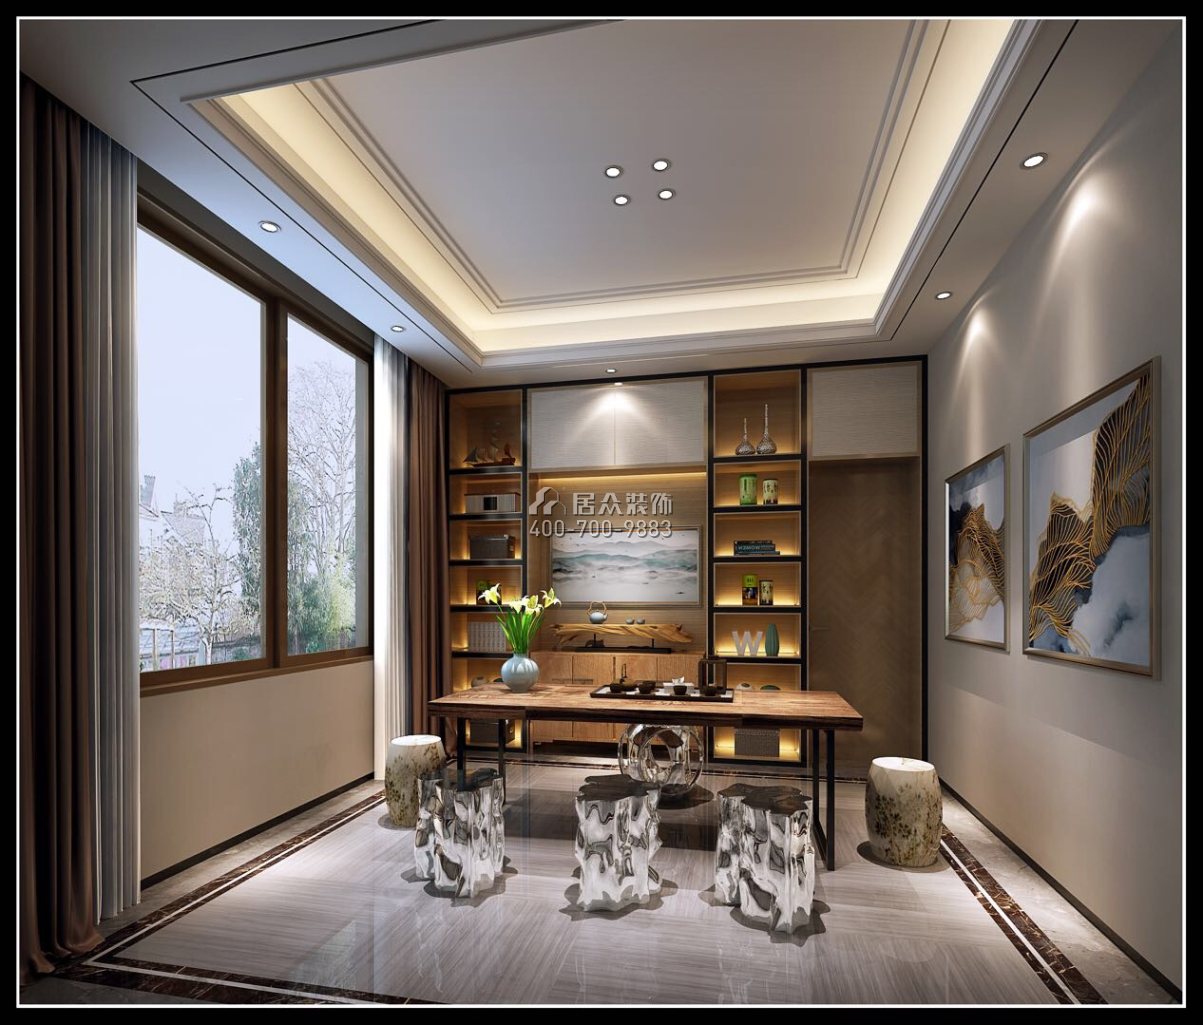 海逸豪庭御峰321平方米现代简约风格别墅户型茶室装修效果图